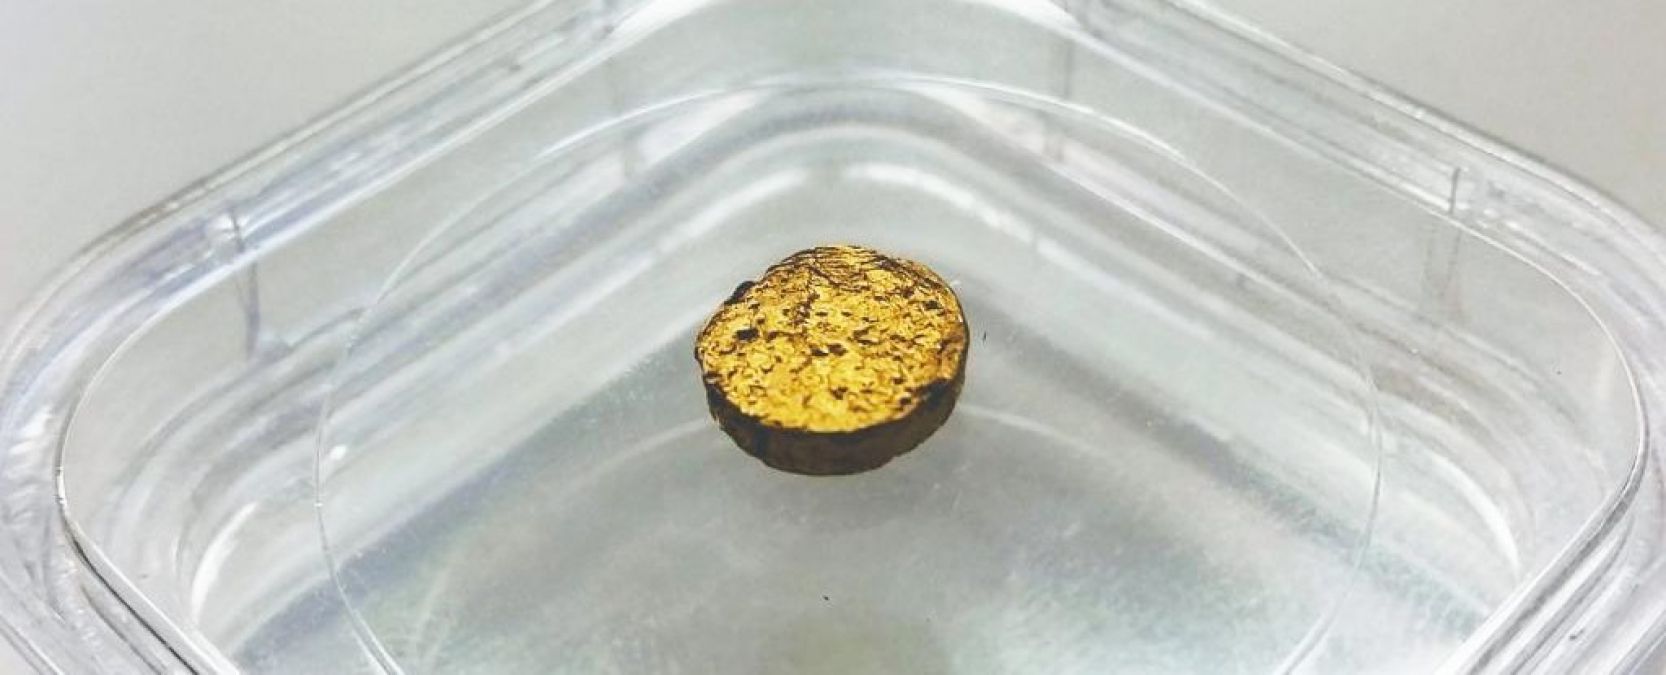 स्विस वैज्ञानिकों ने हासिल की बड़ी उपलब्धि, प्लास्टिक से बनाया सोना